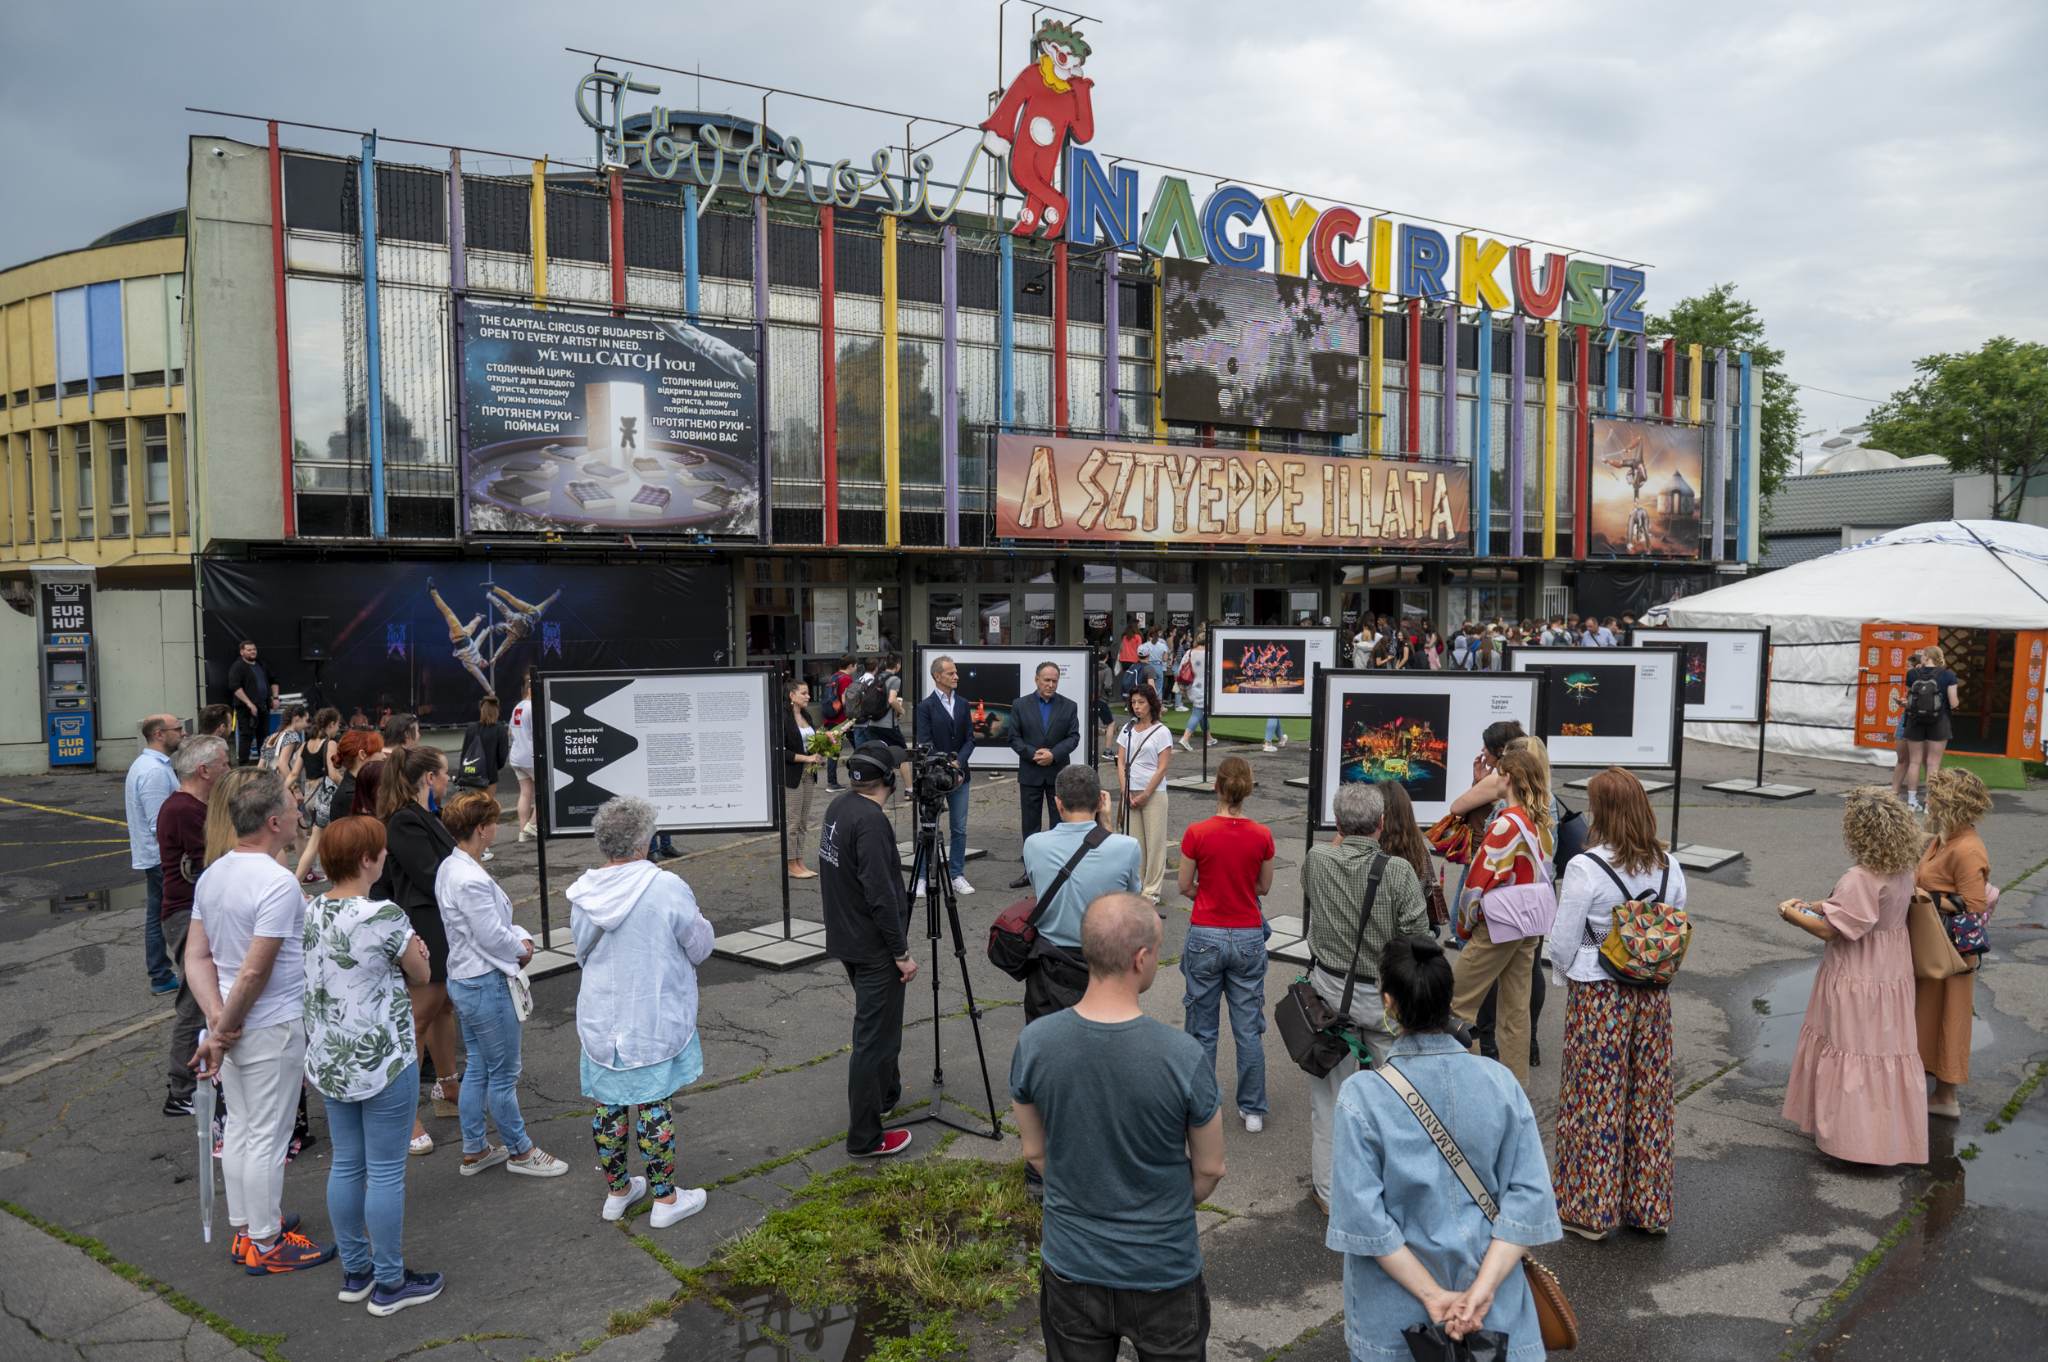 A cirkusz világa Ivana Tomanović szerb fotóművész szemén keresztül – Szabadtéri kiállítás nyílt a Fővárosi Nagycirkusz előtt